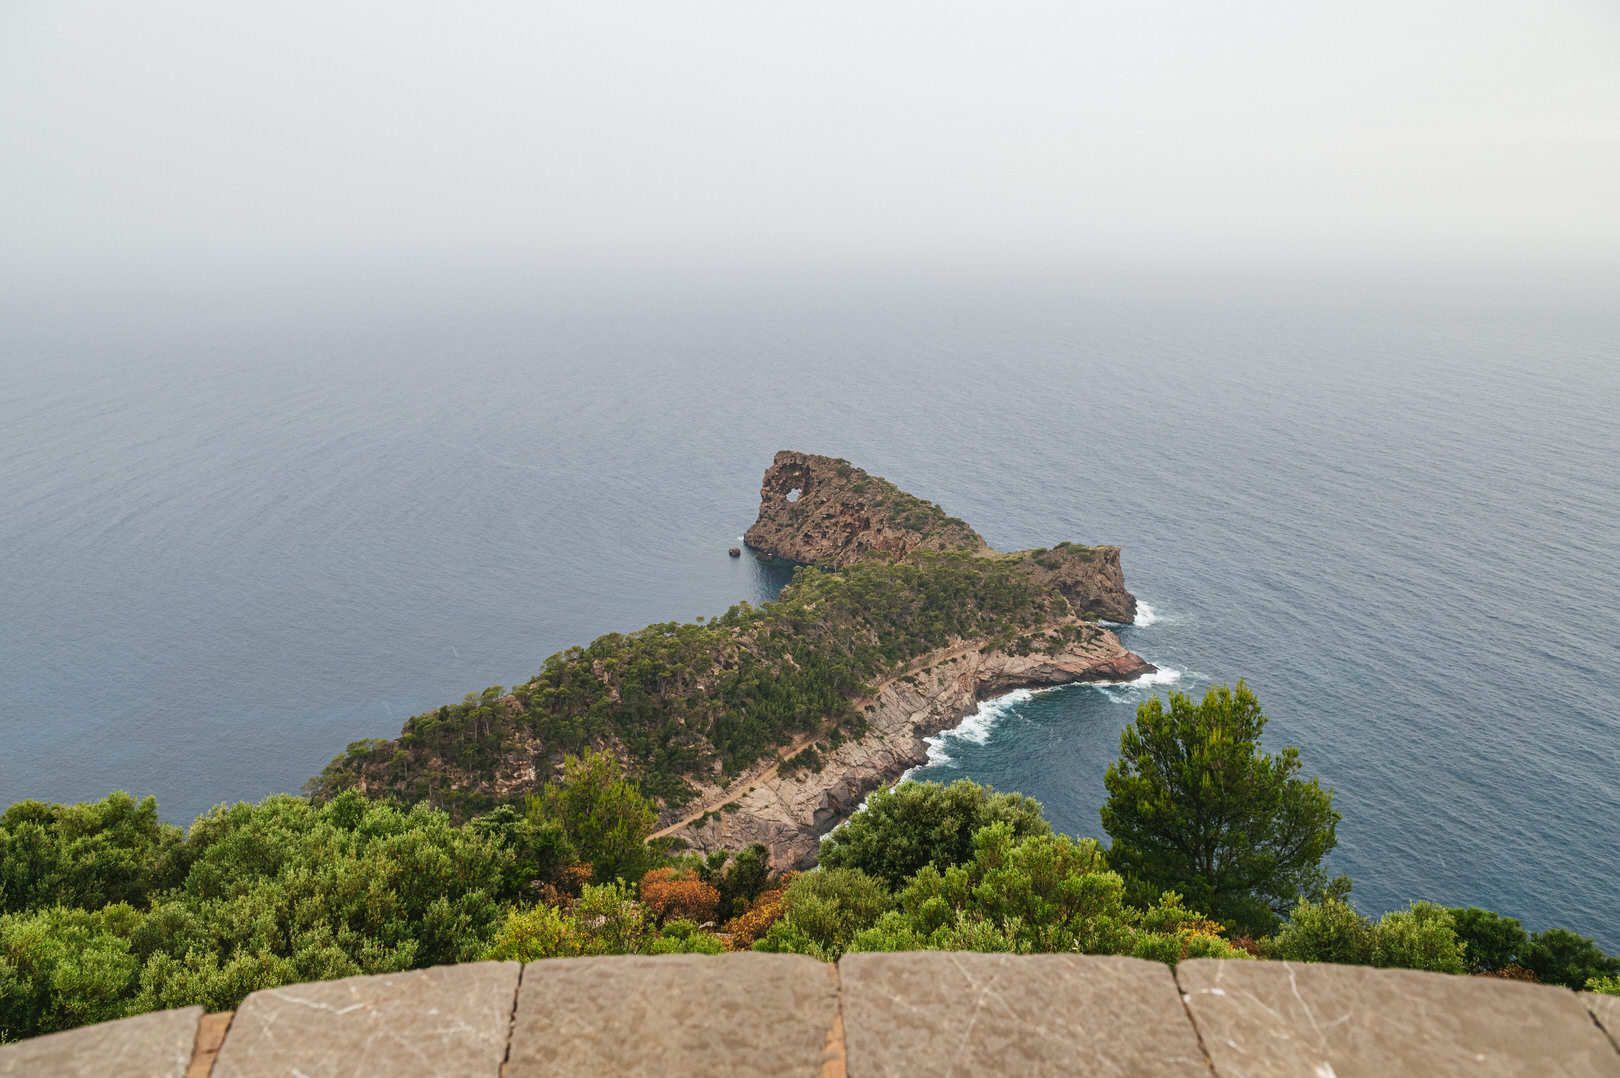 Mirador de Sa Foradada auf Mallorca – Felsenloch